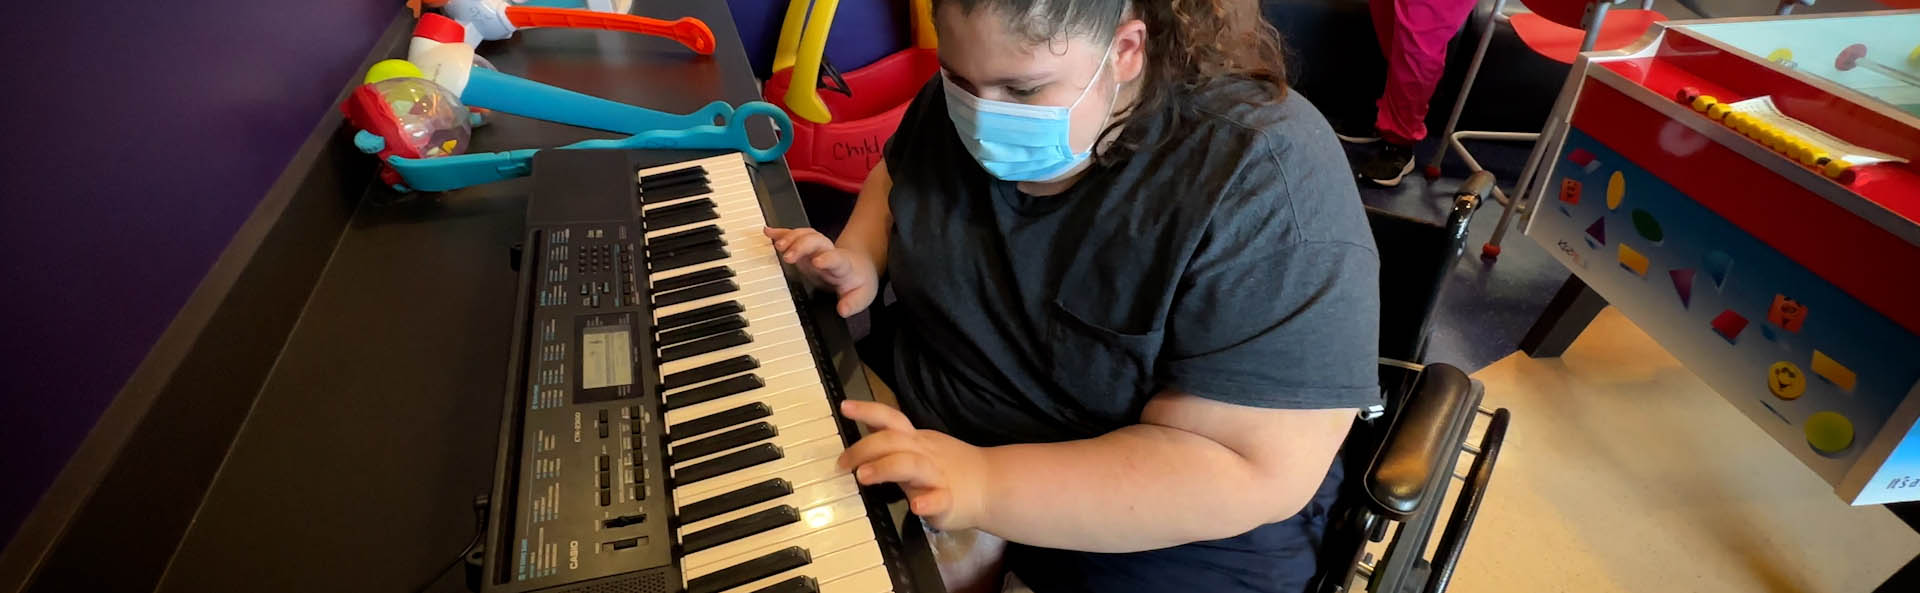 Ein Kind in einer Maske, das auf einer Tastatur spielt